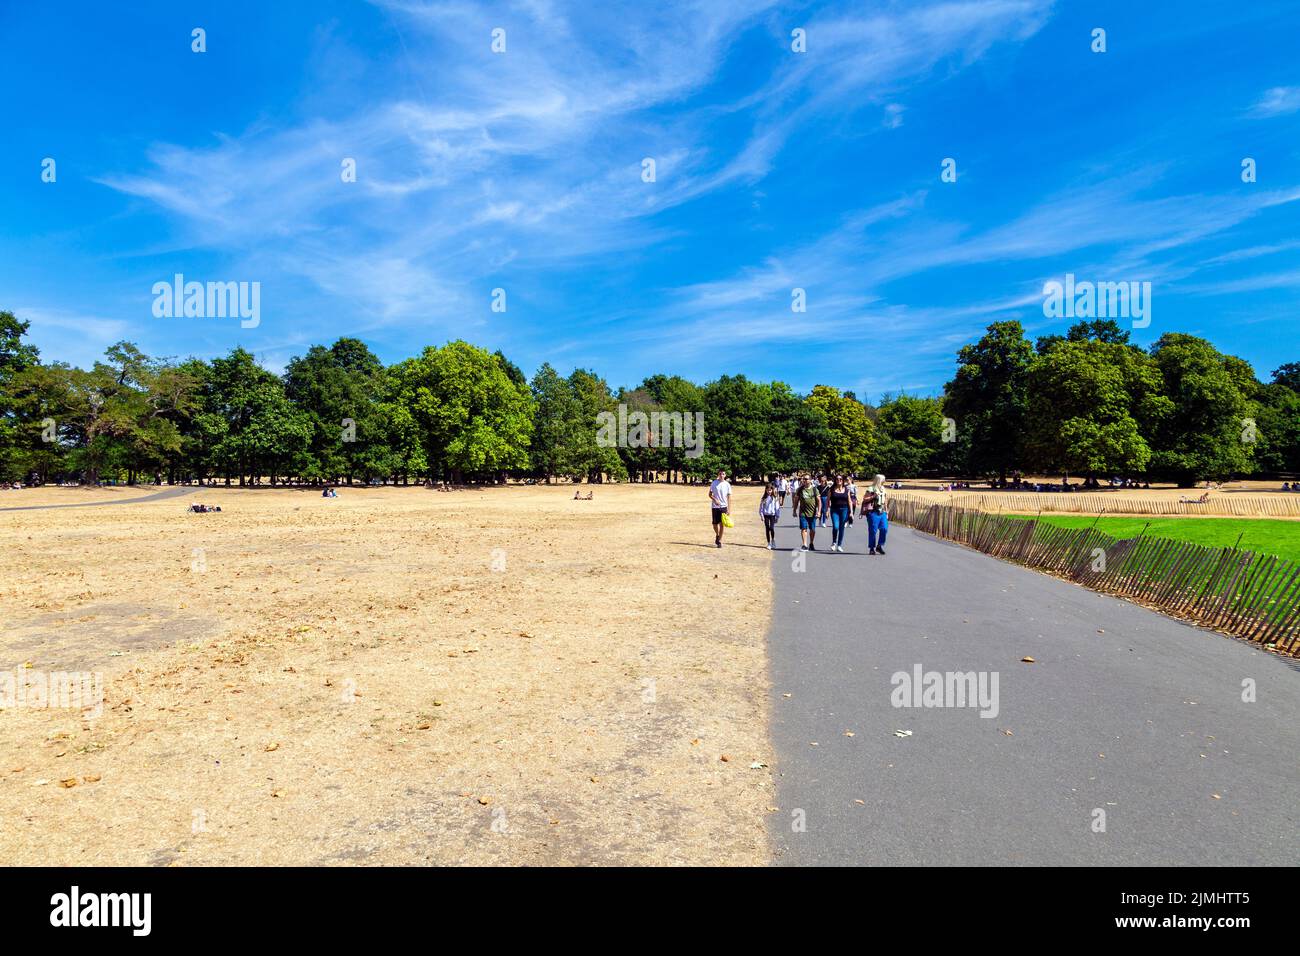 6 août 2022 - Londres, Royaume-Uni - a séché les prairies à Greenwich Park après une série de vagues de chaleur et des températures records, ville confrontée à la sécheresse et mesures de rationnement de l'eau Banque D'Images